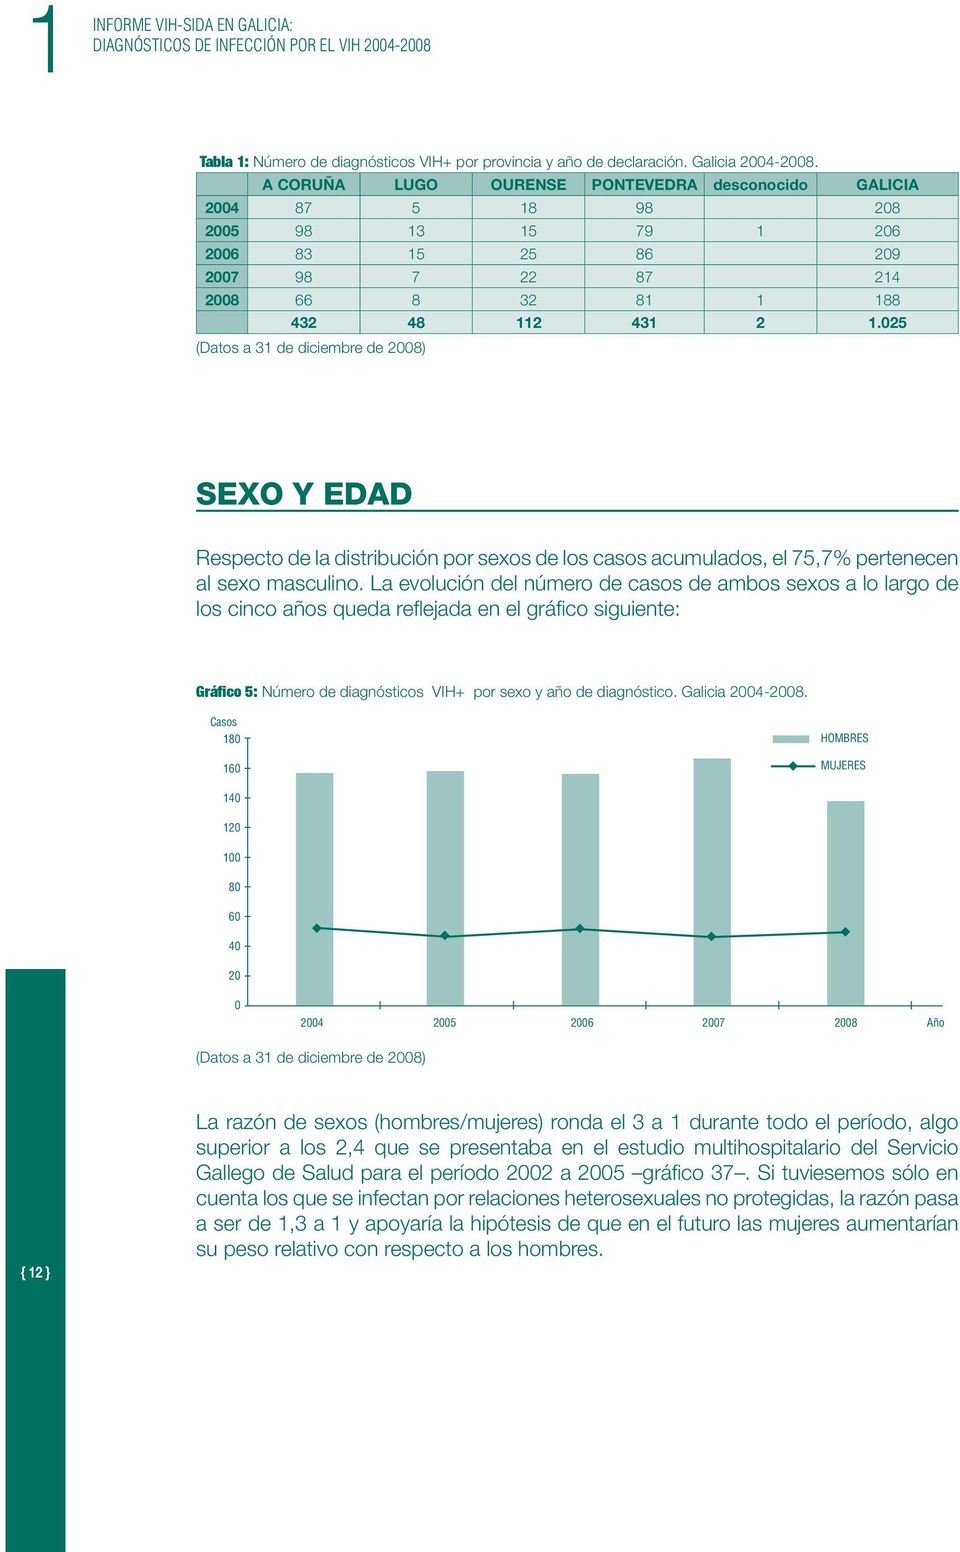 25 SEXO Y EDAD Respecto de la distribución por sexos de los casos acumulados, el 75,7% pertenecen al sexo masculino.